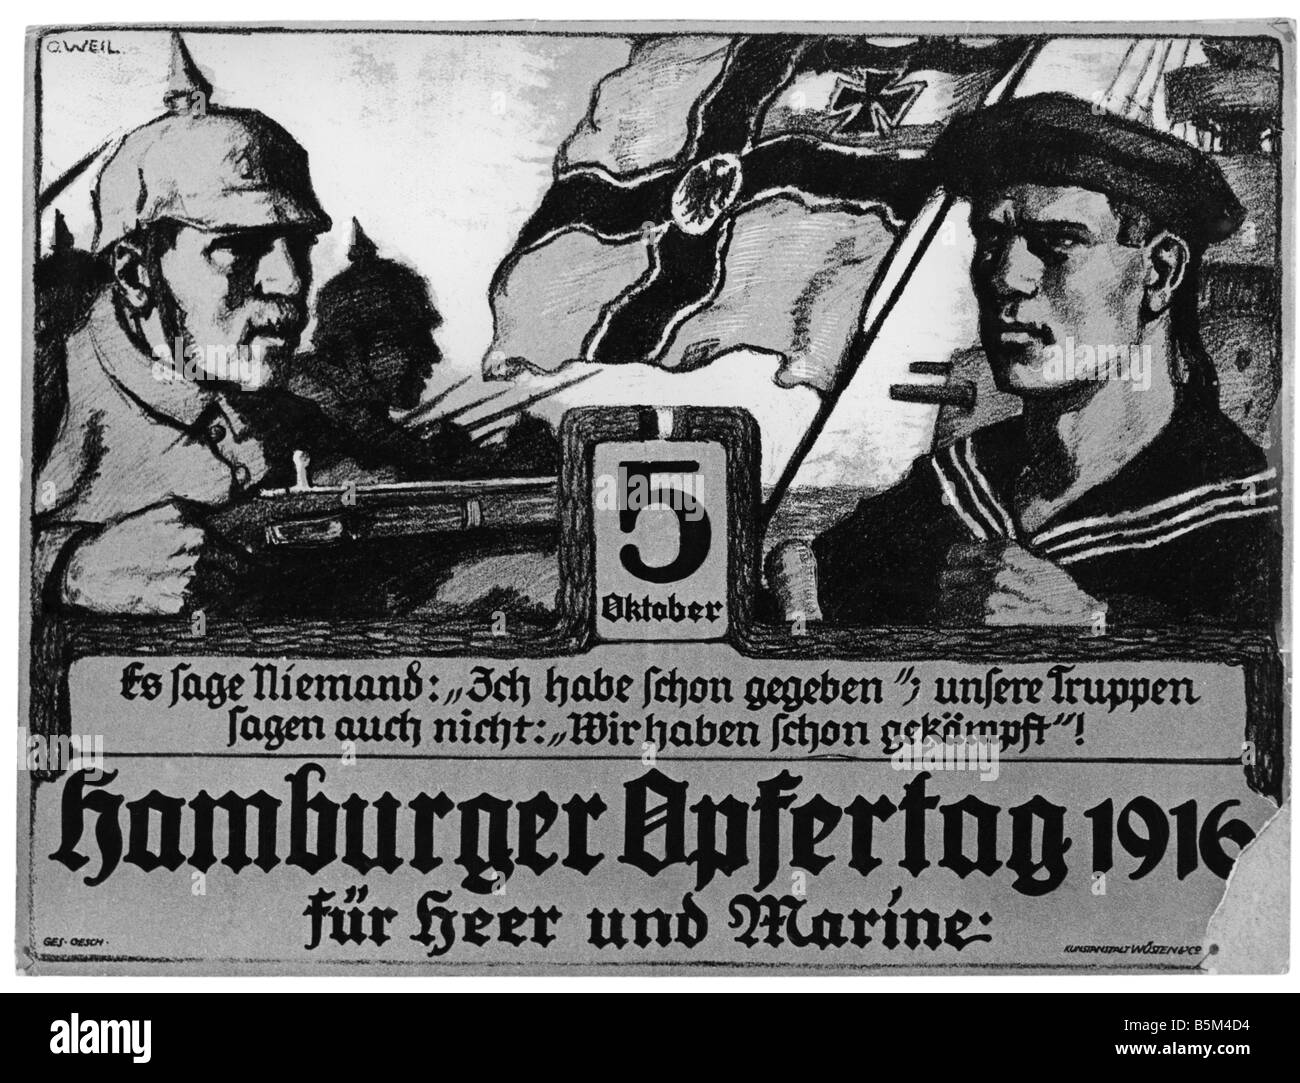 Eventi, Prima guerra mondiale / prima guerra mondiale, propaganda, 'Hamburger Opfertag für Heer und Marine' (Amburgo giorno del sacrificio 1916 a beneficio dell'esercito e della marina), disegno, di O. Weil, Germania, 1916, Foto Stock